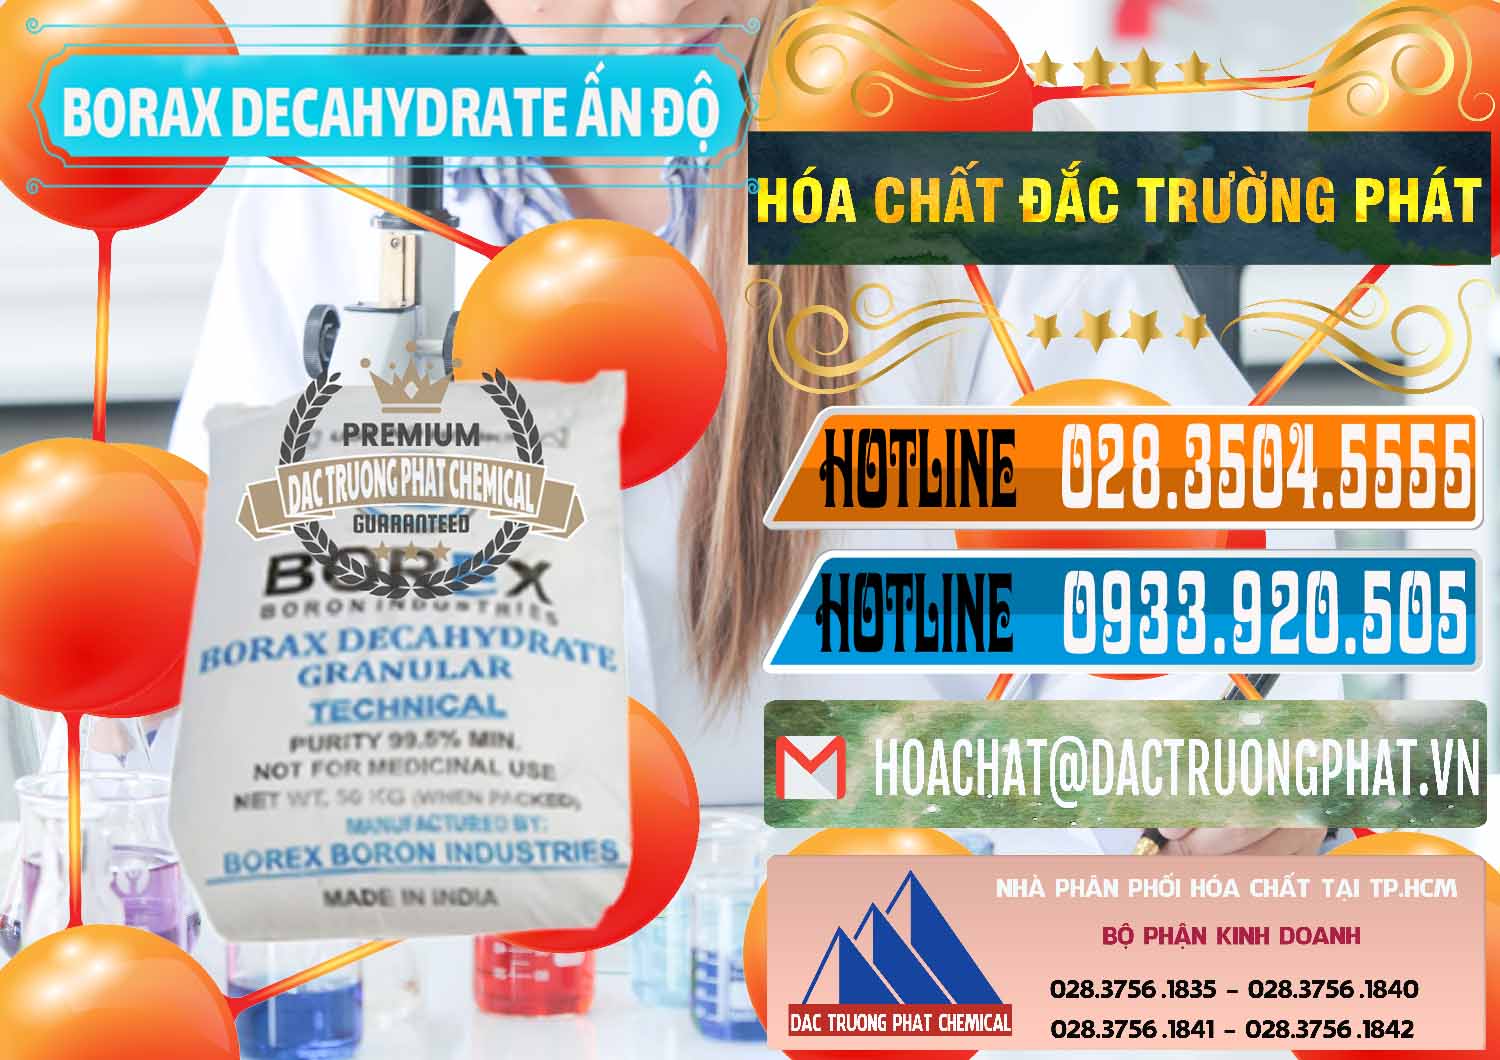 Cty chuyên cung cấp ( bán ) Borax Decahydrate Ấn Độ India - 0449 - Công ty chuyên nhập khẩu và phân phối hóa chất tại TP.HCM - stmp.net